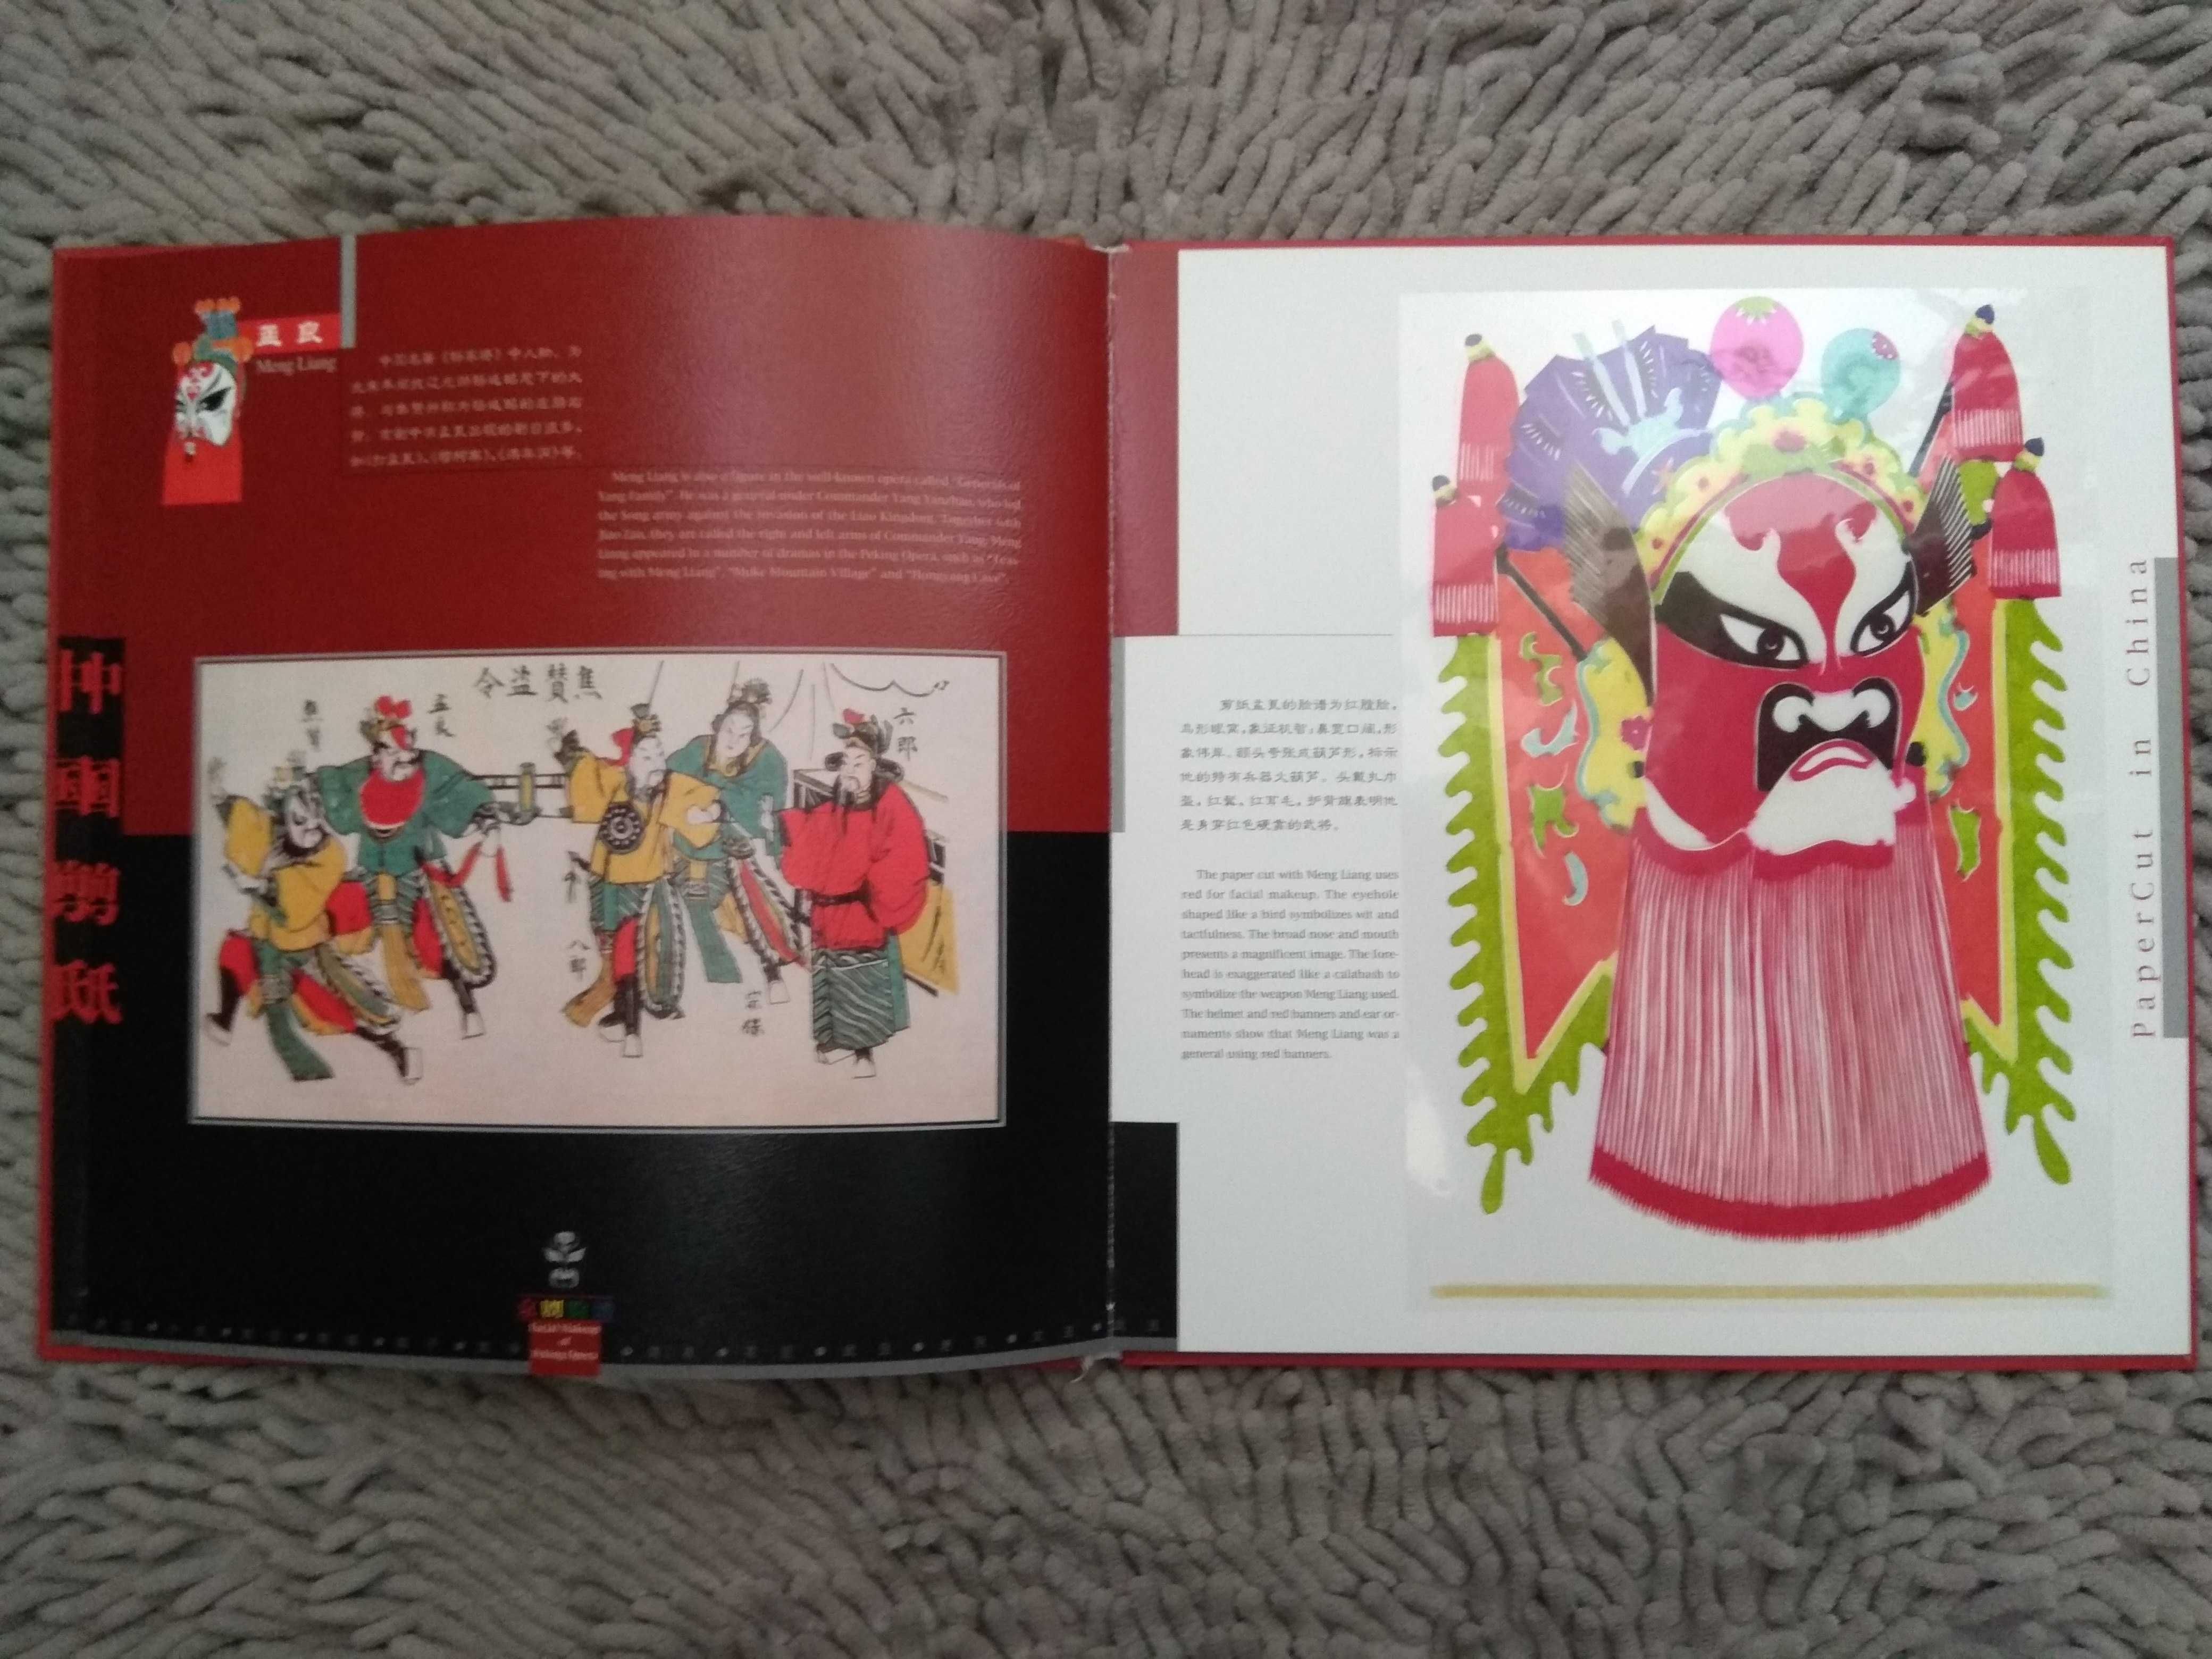 Hовая книга по китайскому искусству вырезания из бумаги с аппликациями